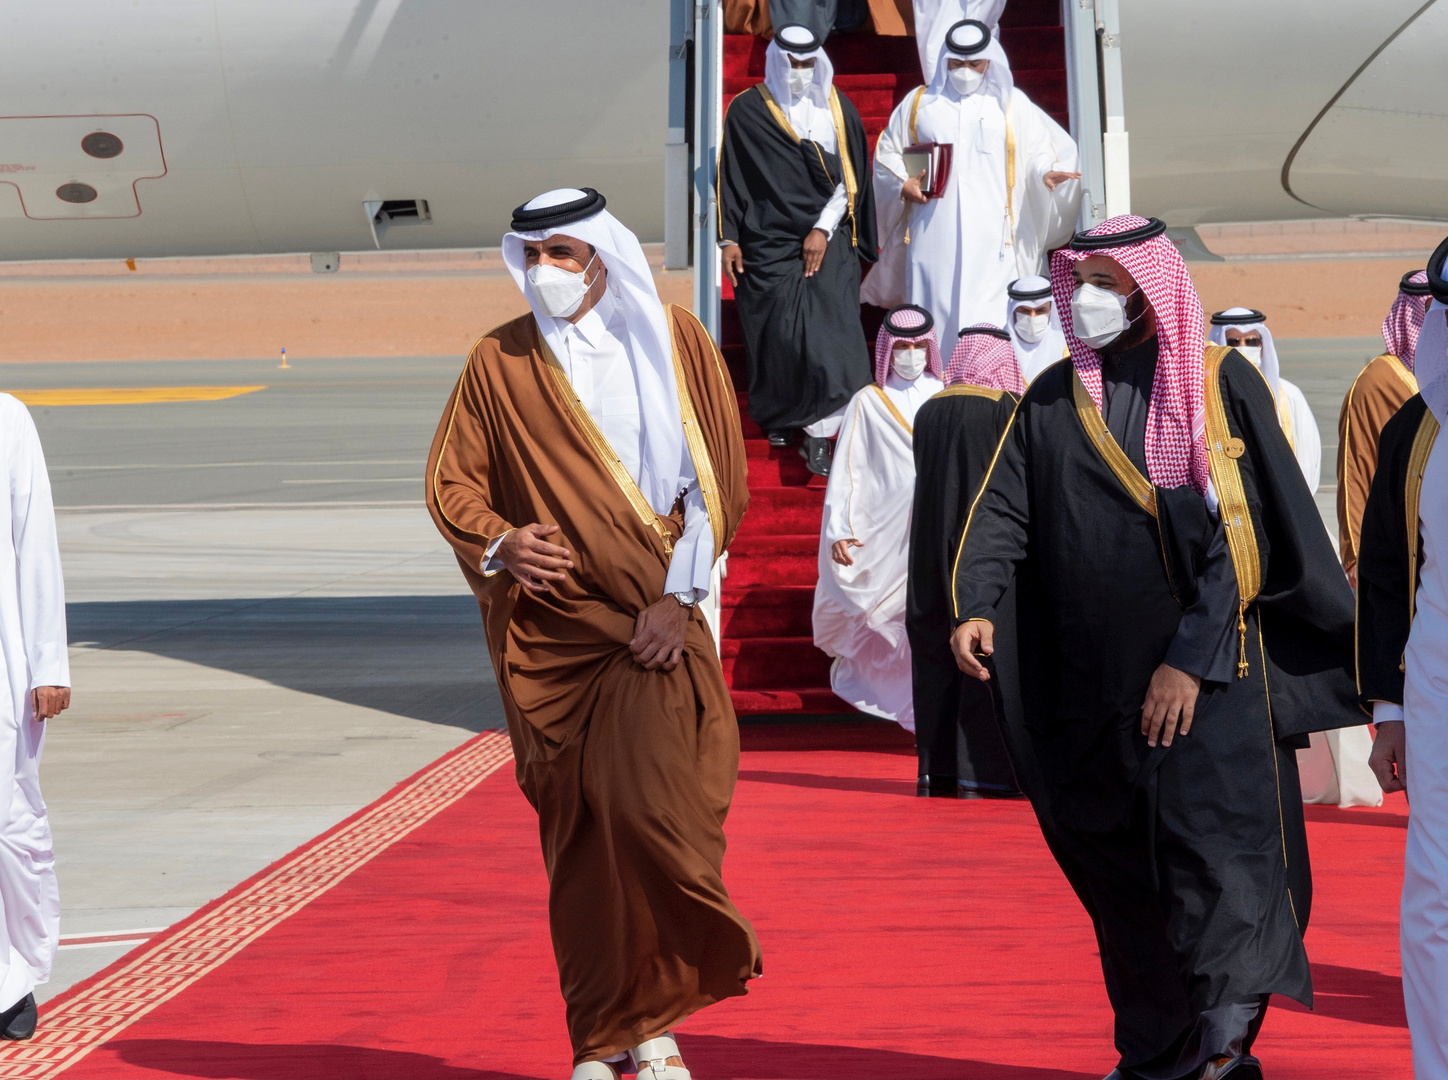 بن سلمان يفتتح قمة المصالحة الخليجية: اتفاق العلا أكد التضامن والاستقرار الخليجيين